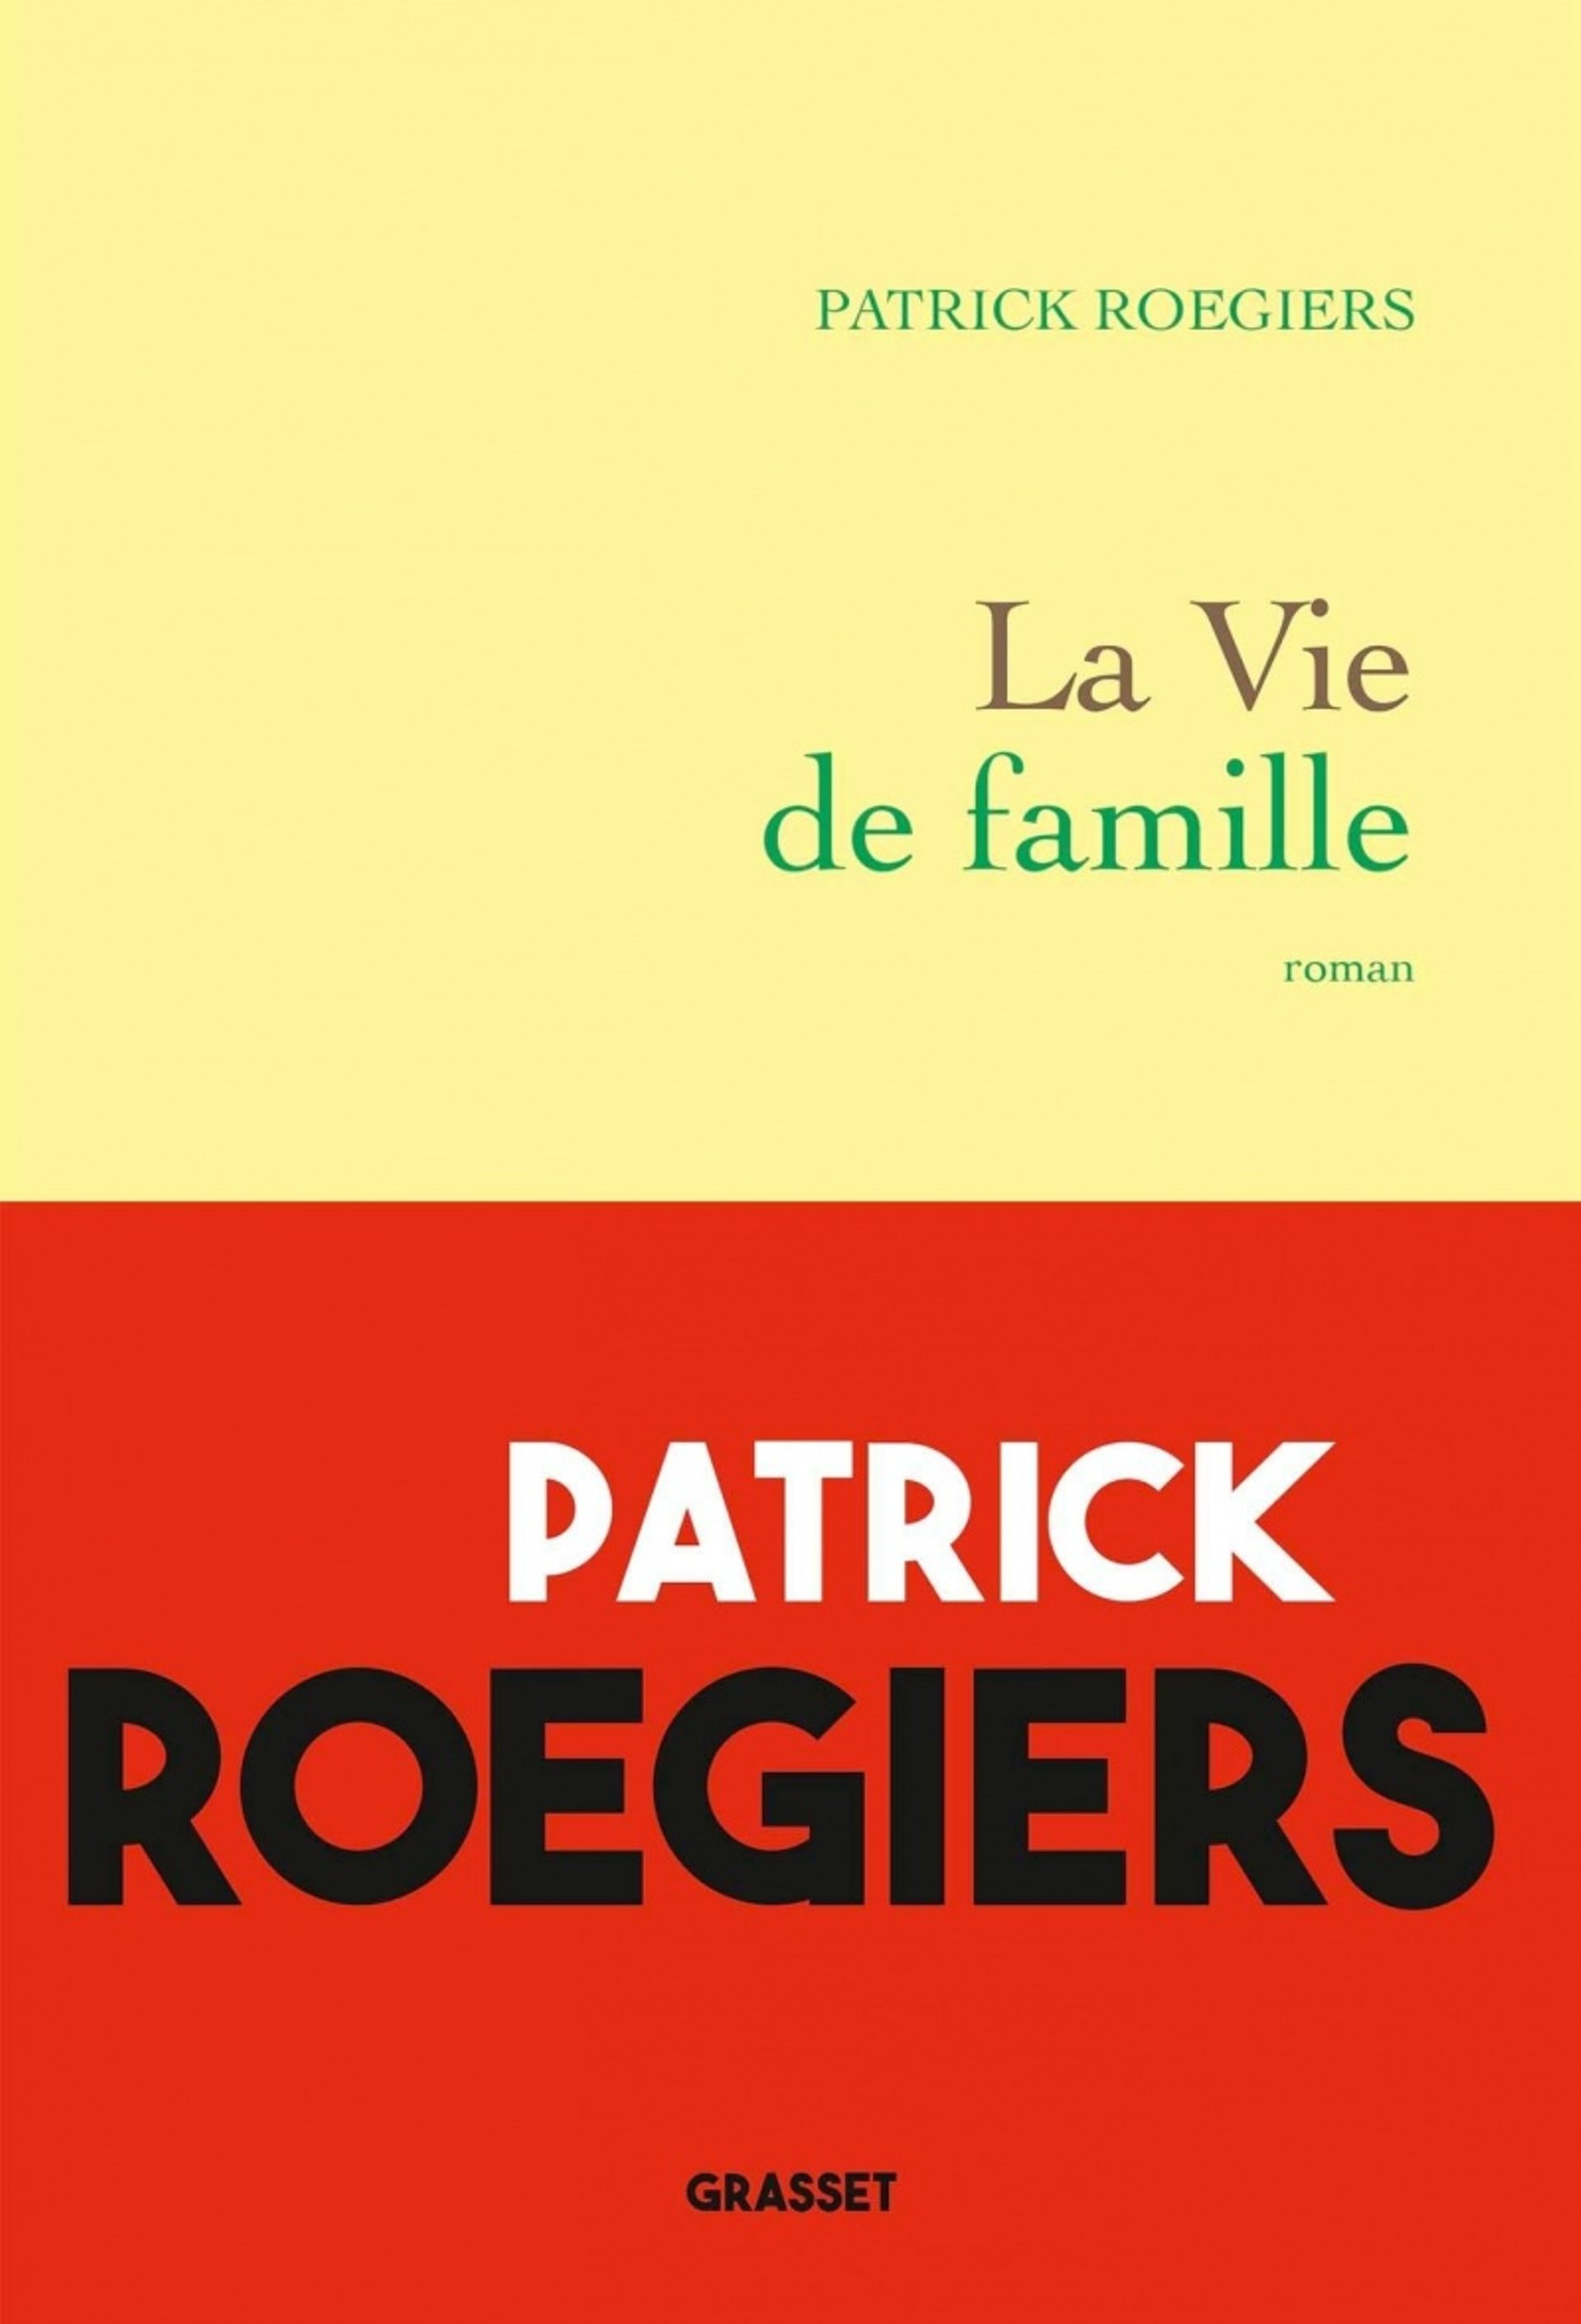 Couverture du livre "La Vie de famille" de Patrick Roegiers (Grasset)